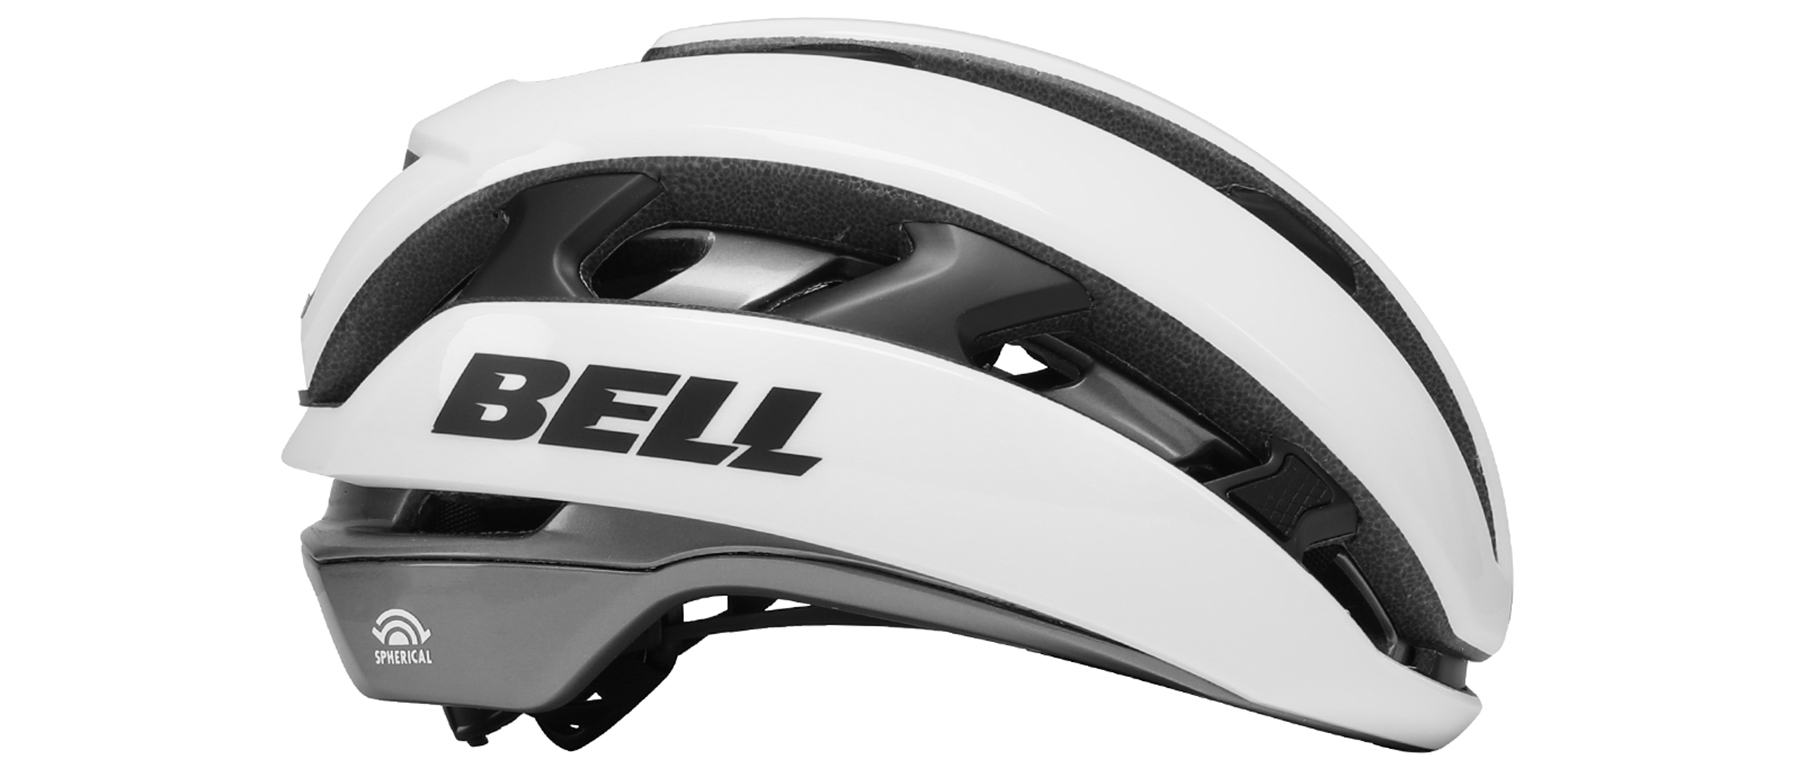 Bell XR Spherical Helmet Excel Sports | Shop Online From Boulder